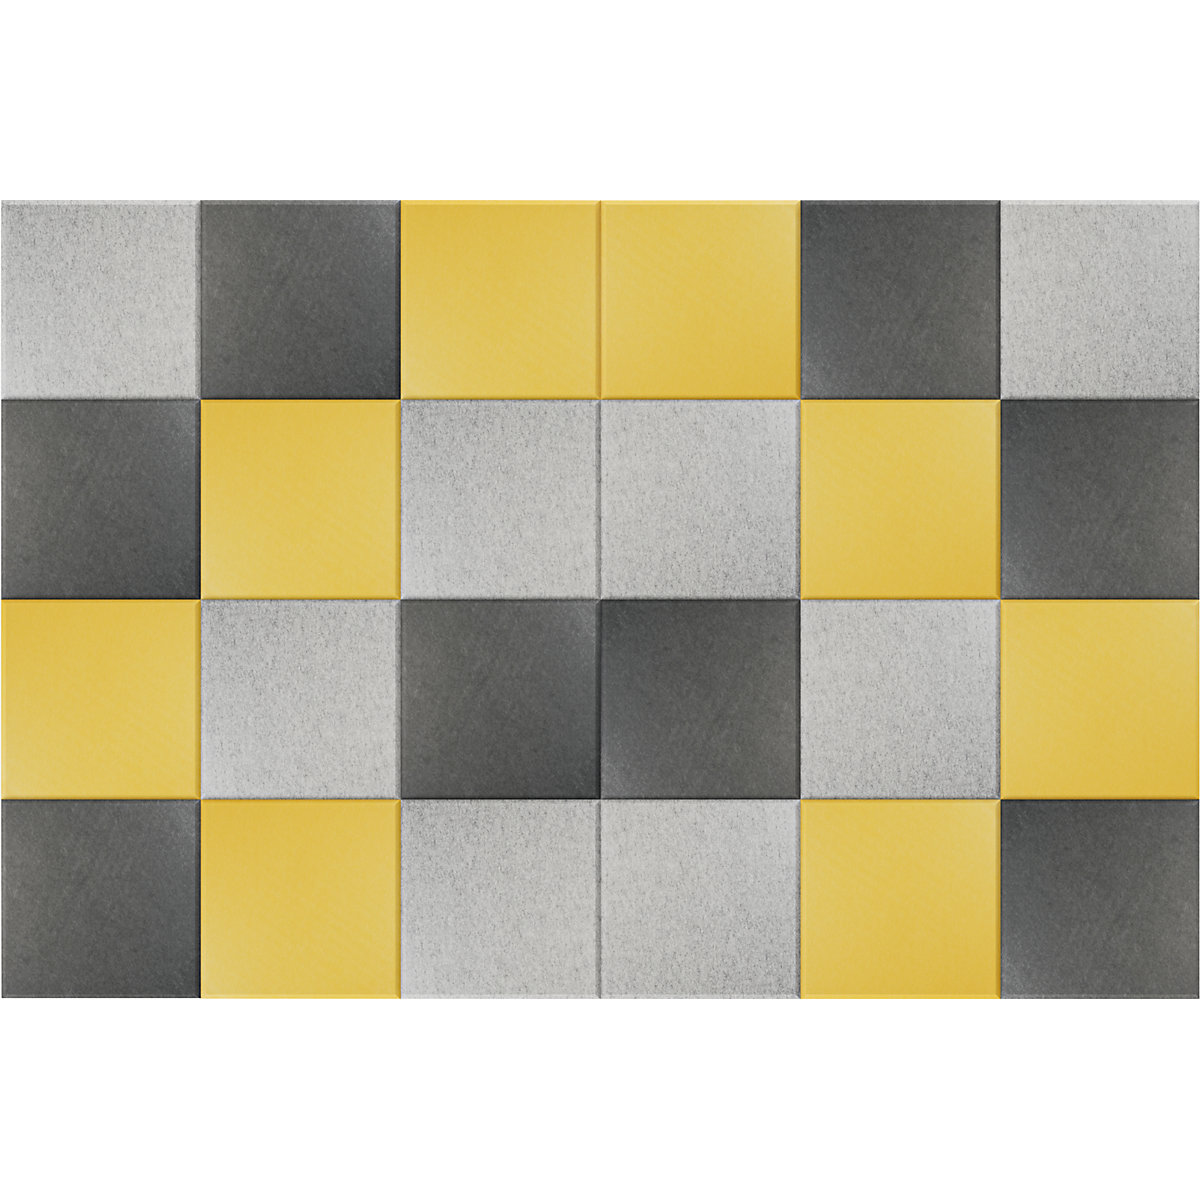 EUROKRAFTbasic – Carreau mural acoustique, h x l 300 x 300 mm, lot de 24, 8 de chaque: jaune, gris clair, gris foncé